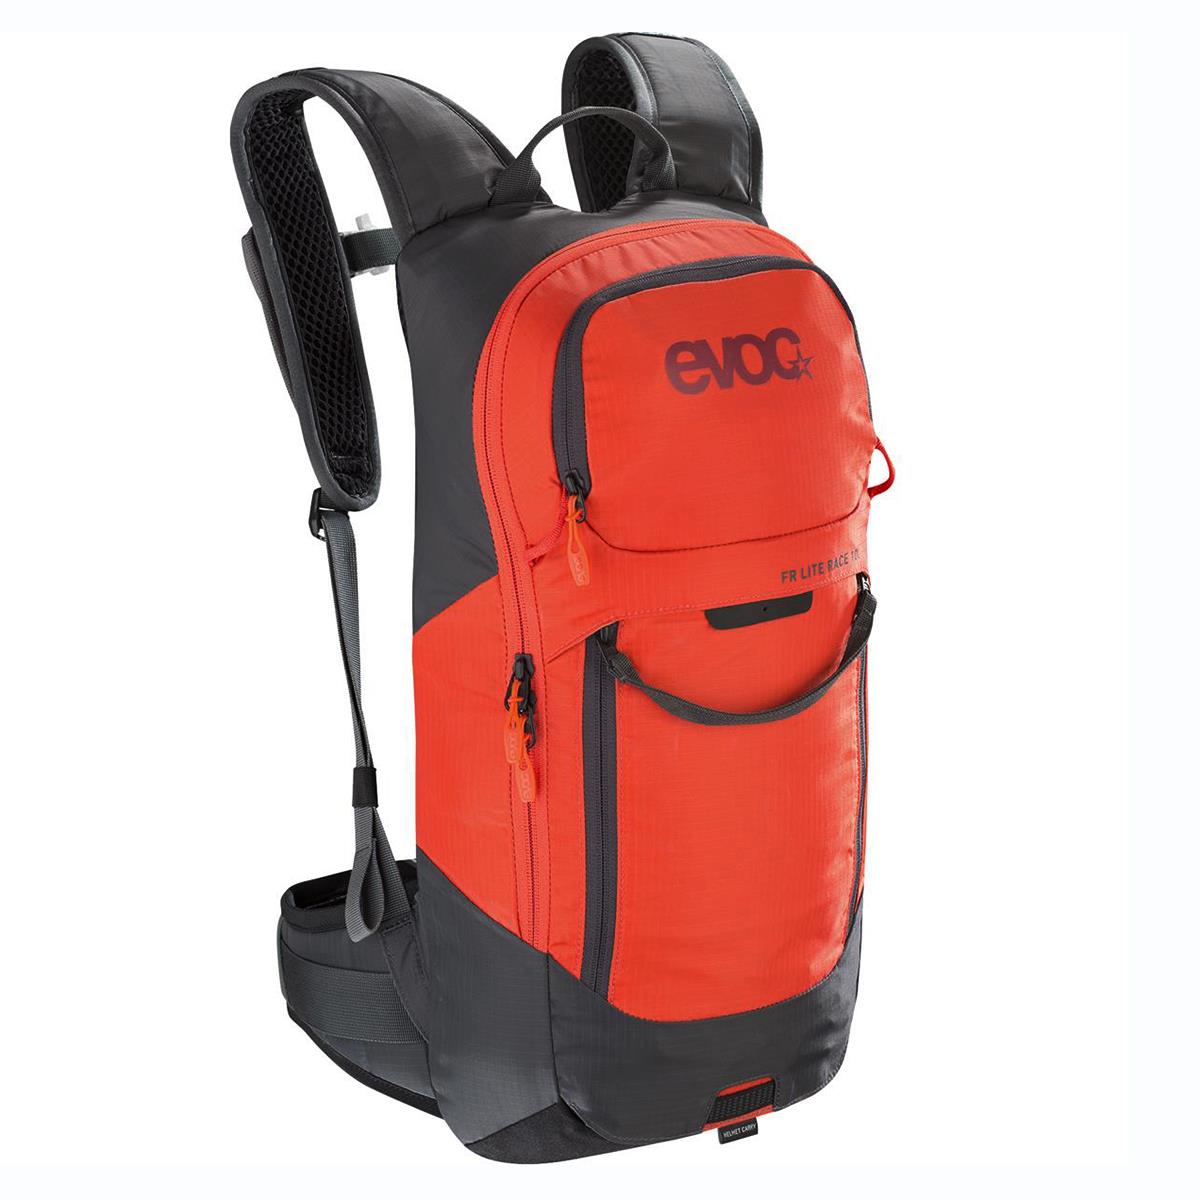 Evoc Protector Backpack FR Lite Race 10L - Carbon Gray/Orange